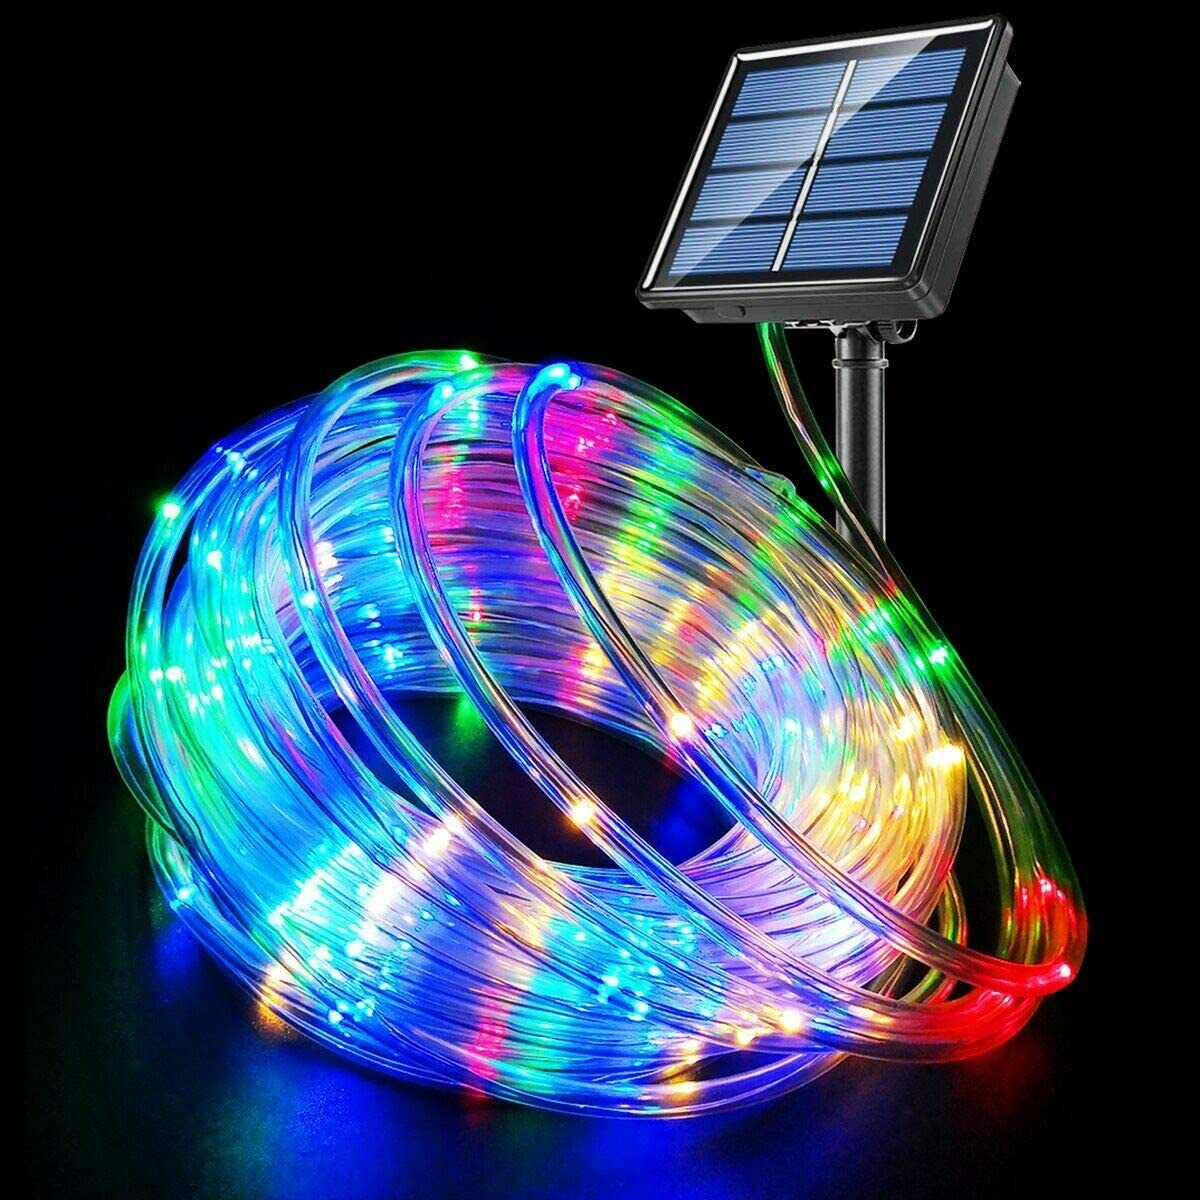 100 LED Solar LED Rope Lights Fairy Tube Light String Waterproof ...